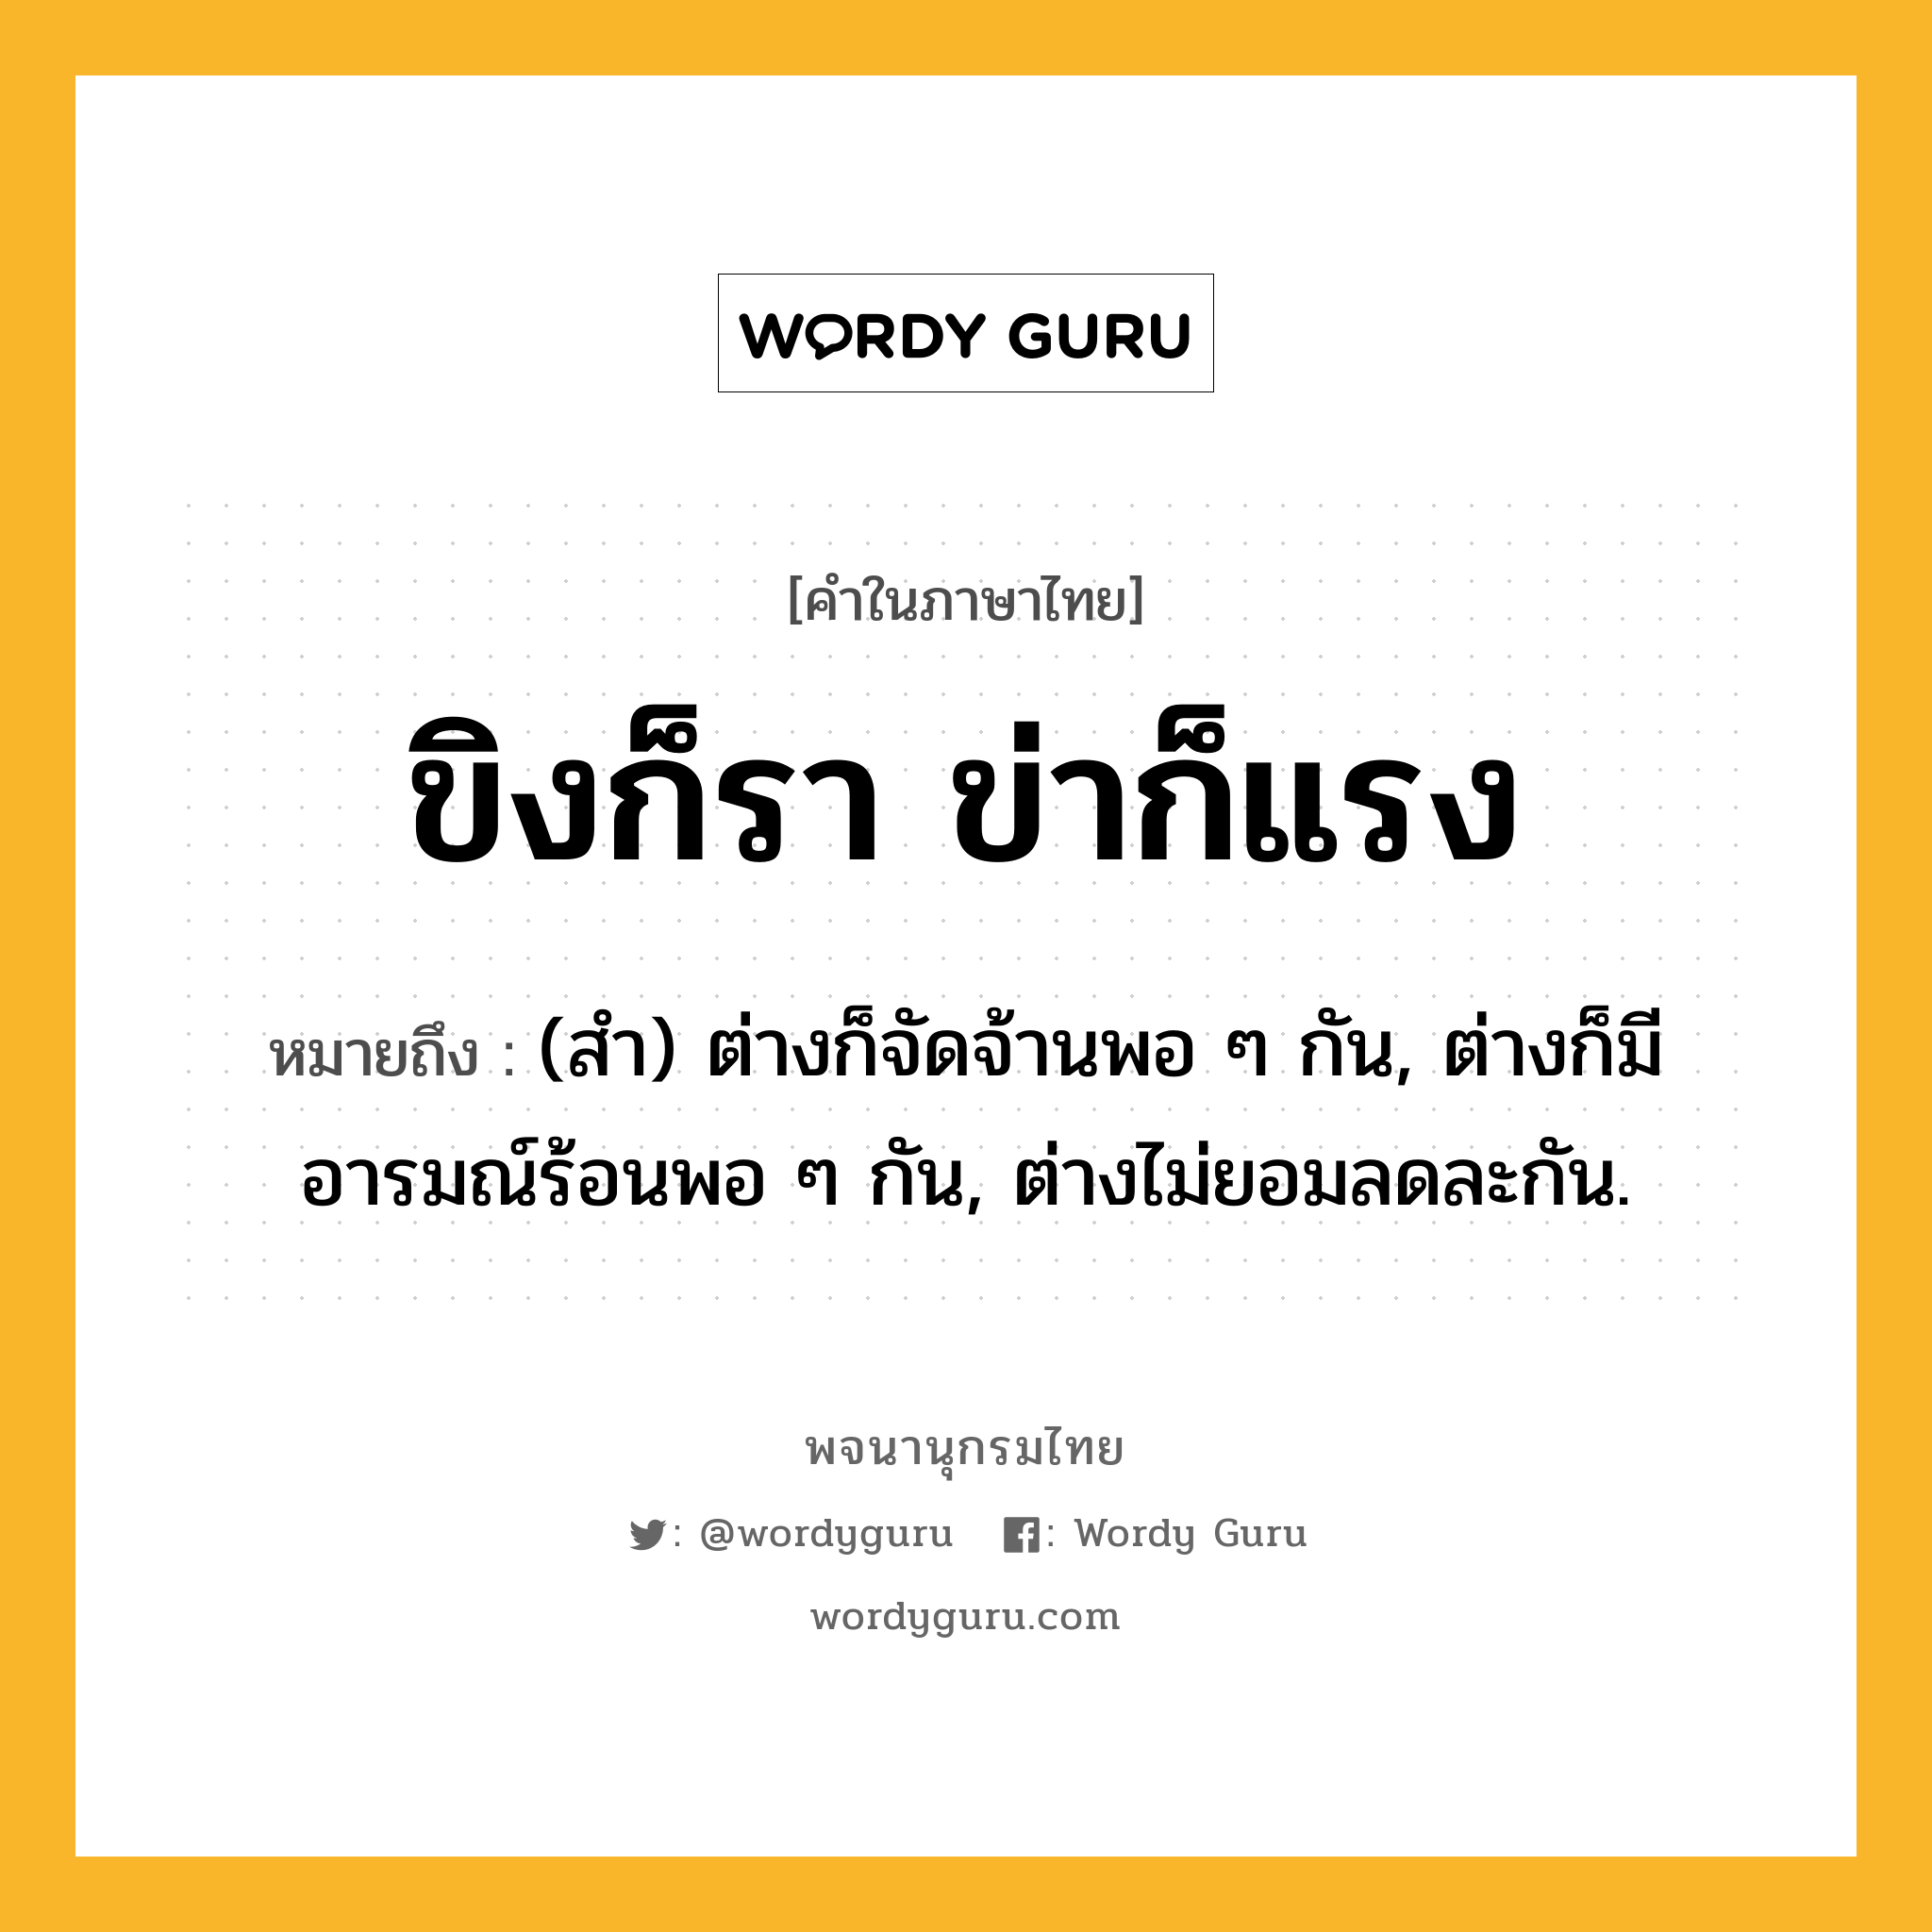 ขิงก็รา ข่าก็แรง หมายถึงอะไร?, คำในภาษาไทย ขิงก็รา ข่าก็แรง หมายถึง (สํา) ต่างก็จัดจ้านพอ ๆ กัน, ต่างก็มีอารมณ์ร้อนพอ ๆ กัน, ต่างไม่ยอมลดละกัน.